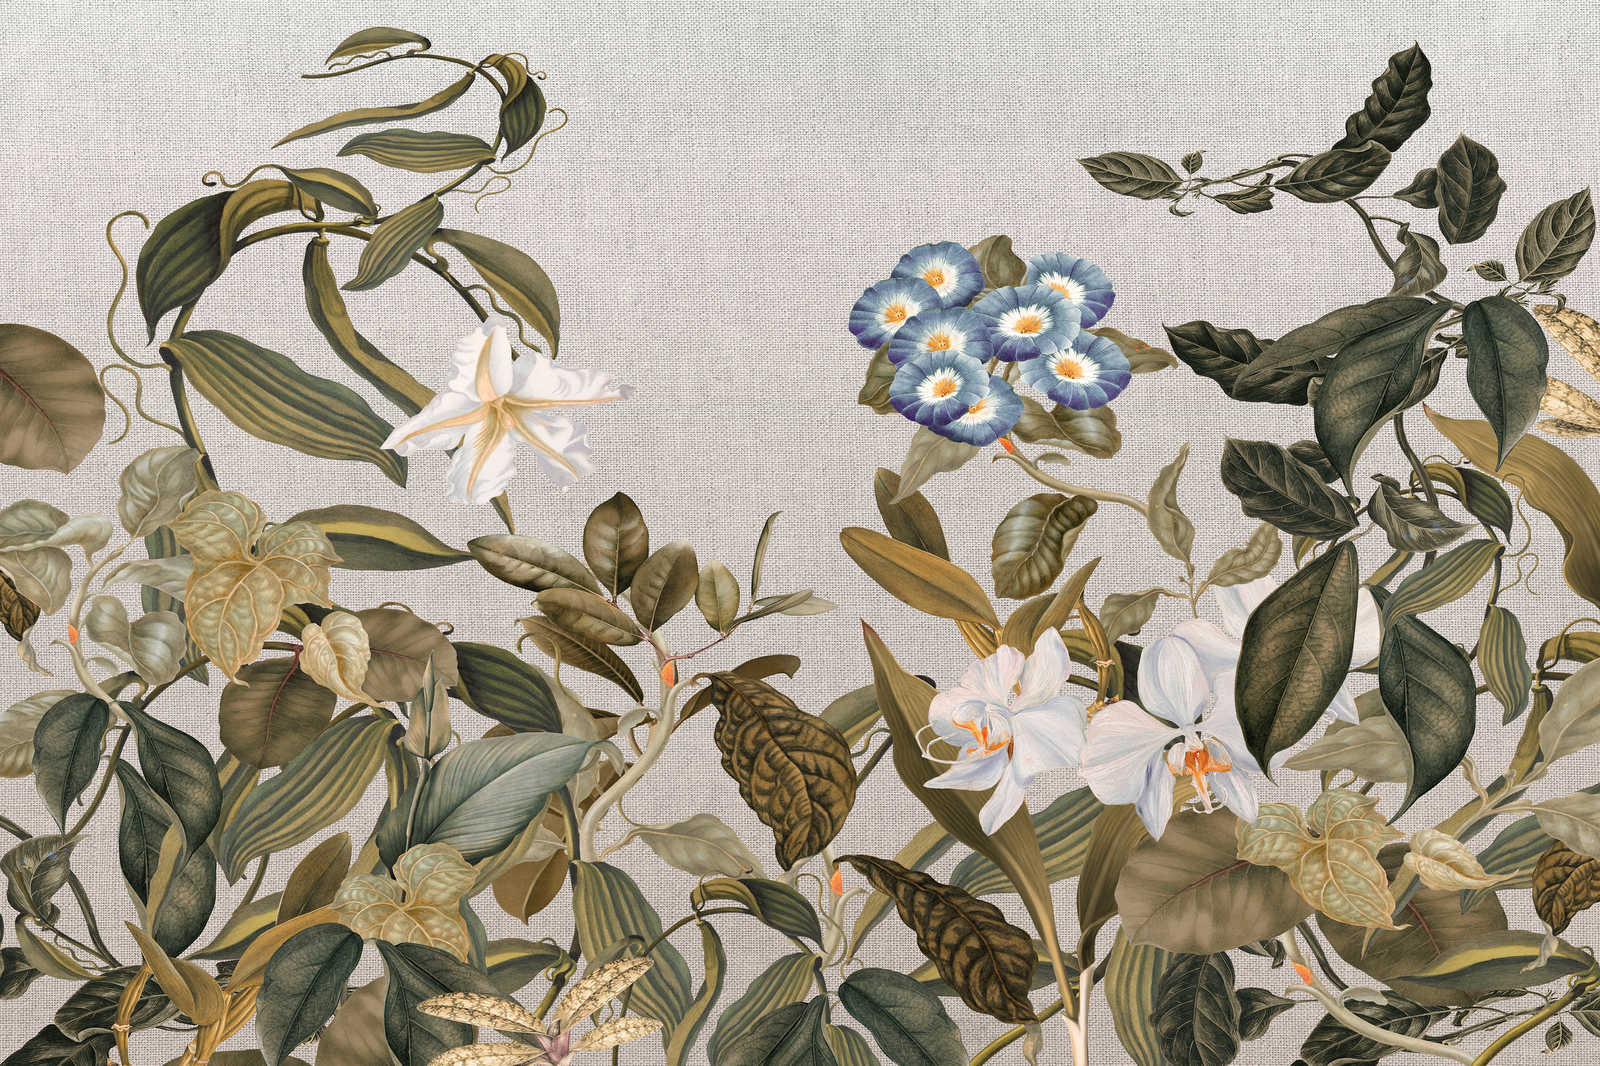             Canvas schilderij Botanische Stijl Bloemrijk, Bladeren & Textiel Look - 1.20 m x 0.80 m
        